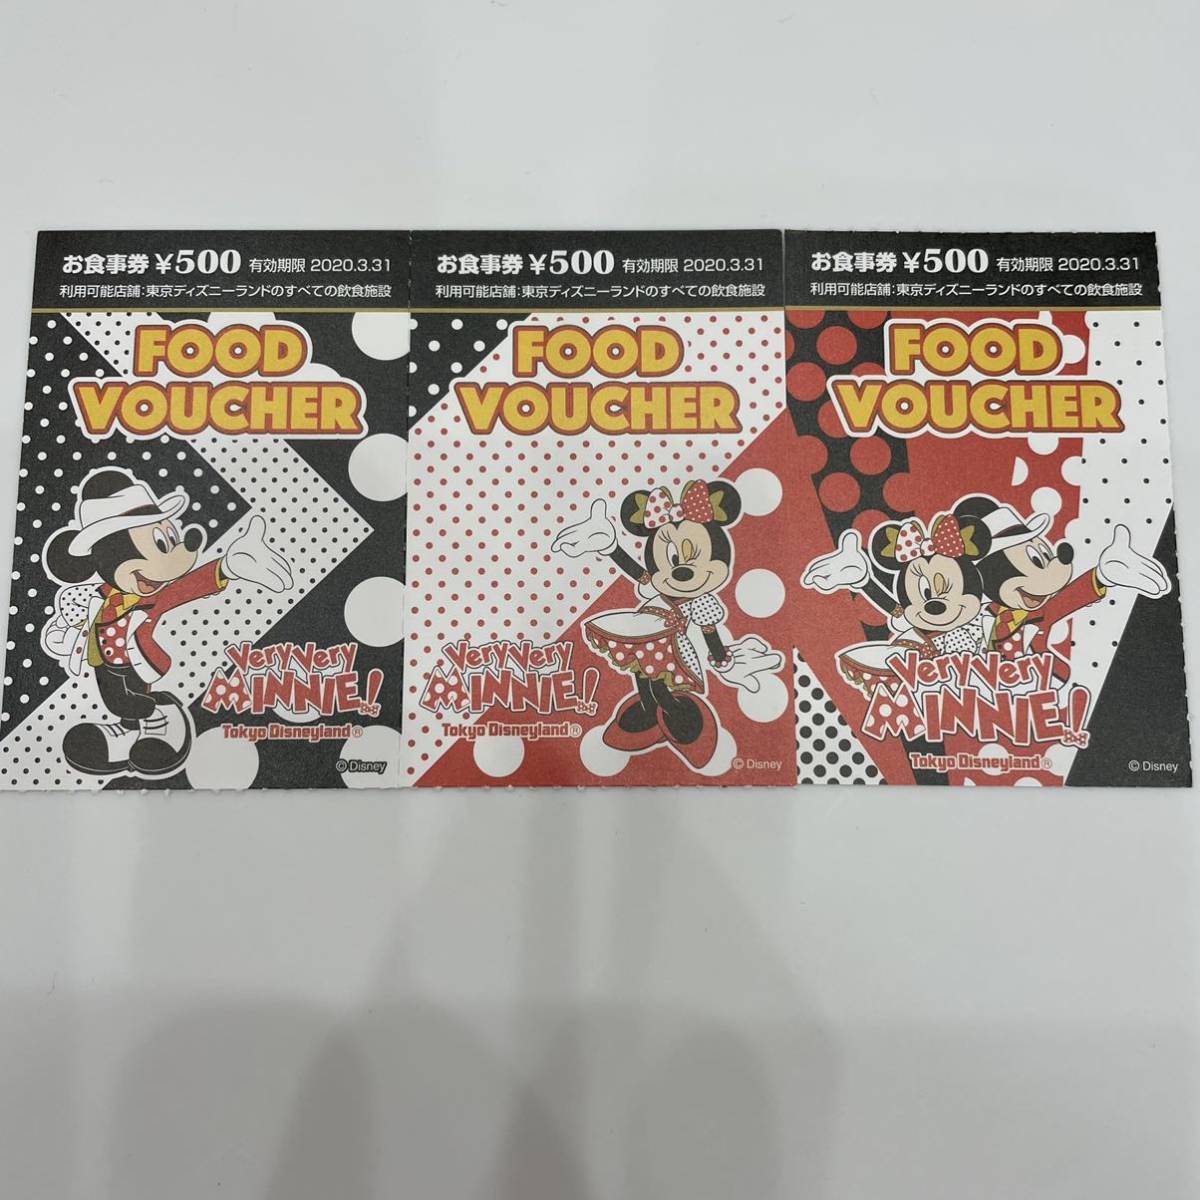 Yahoo!オークション - 東京ディズニーランド フードバウチャー 500円 